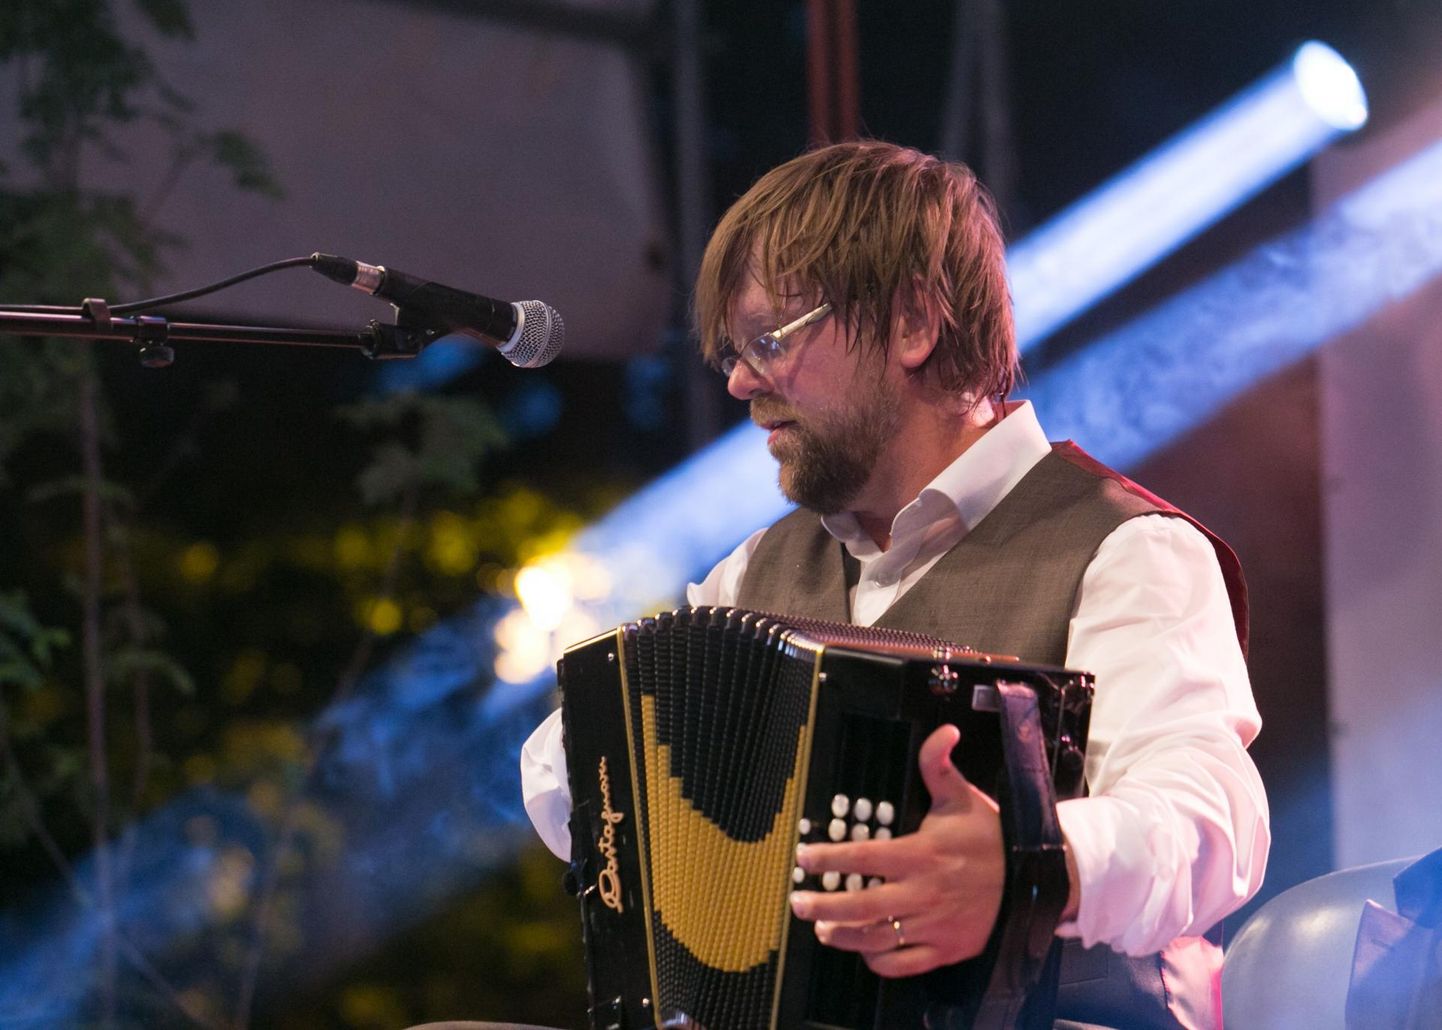  Soome muusik ja helilooja Antti Paalanen on folgifestivalil esinenud ka 2014. aastal. Paalanen on tuntud oma orgaanilise esitusstiili, uute tehniliste võtete ning ekspressiivse kõlapildi poolest, mis aitavad akordioni potentsiaalil paremini esile tulla.